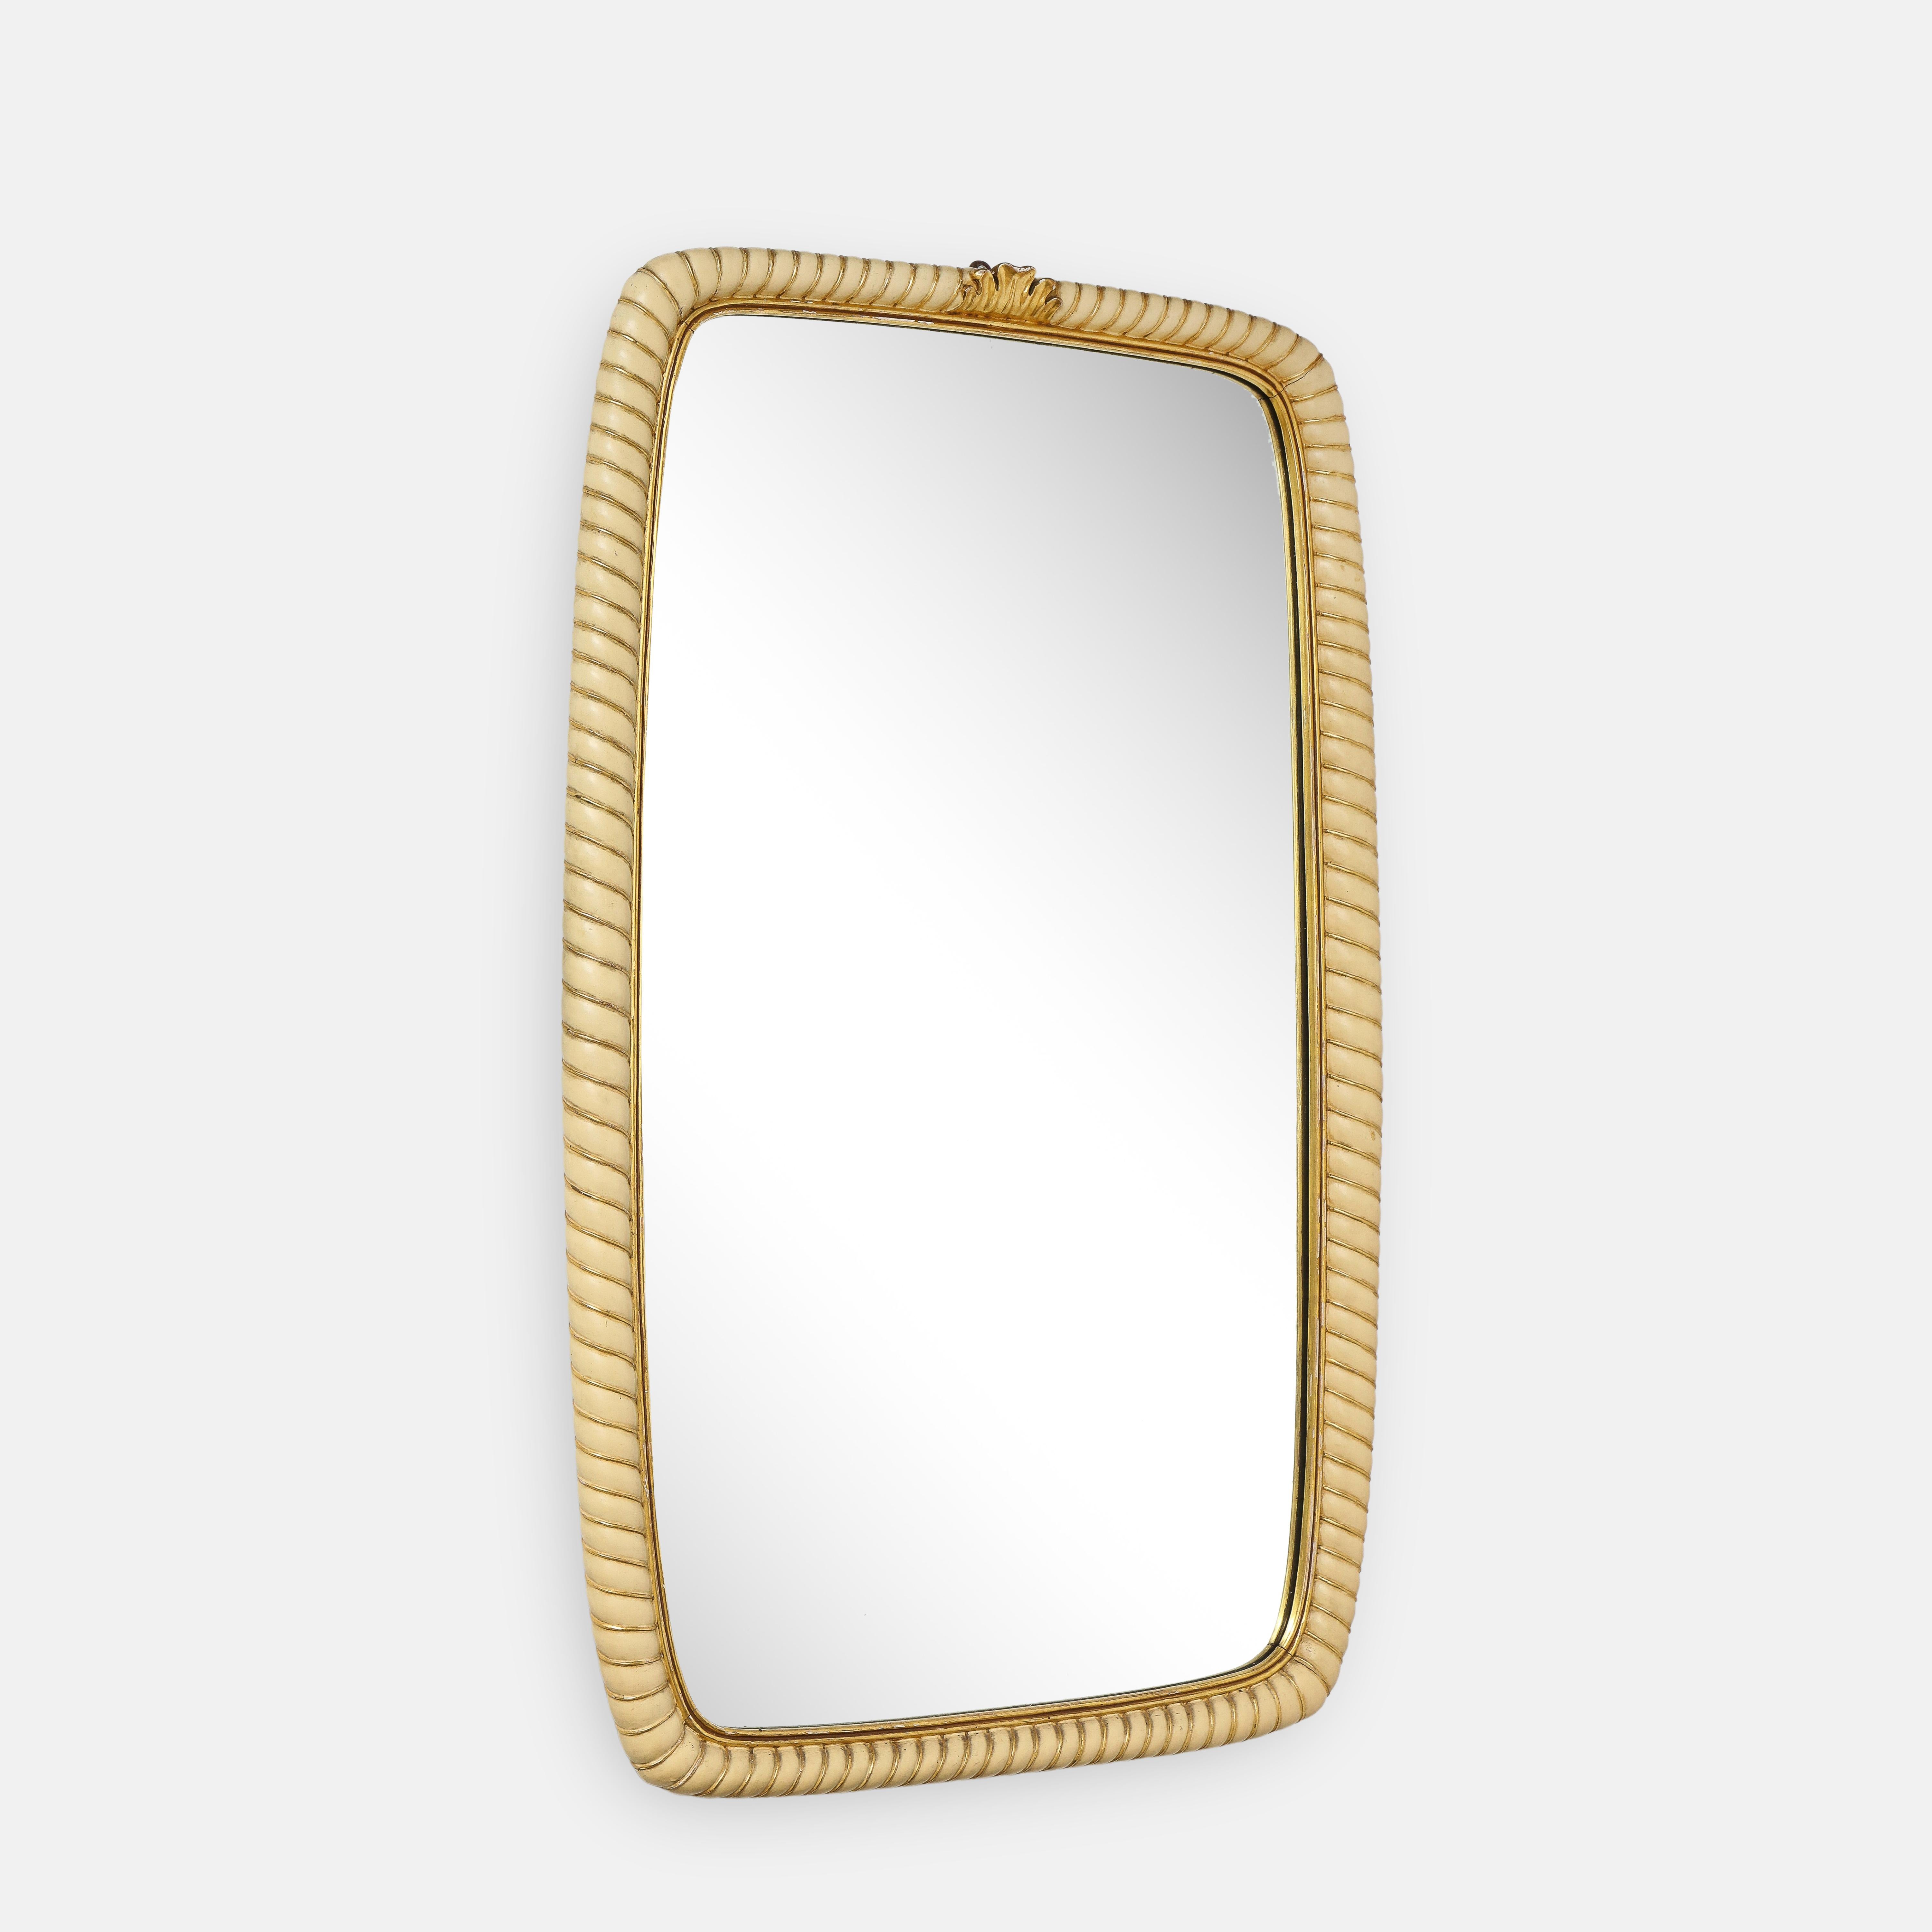 Osvaldo Borsani 1940's rare exquisite large mirror with handved ivory painted and gilded wood frame. Ce joli miroir présente une magnifique bordure en corde peinte en ivoire et sculptée en doré, avec un décor central de feuilles sculptées en doré